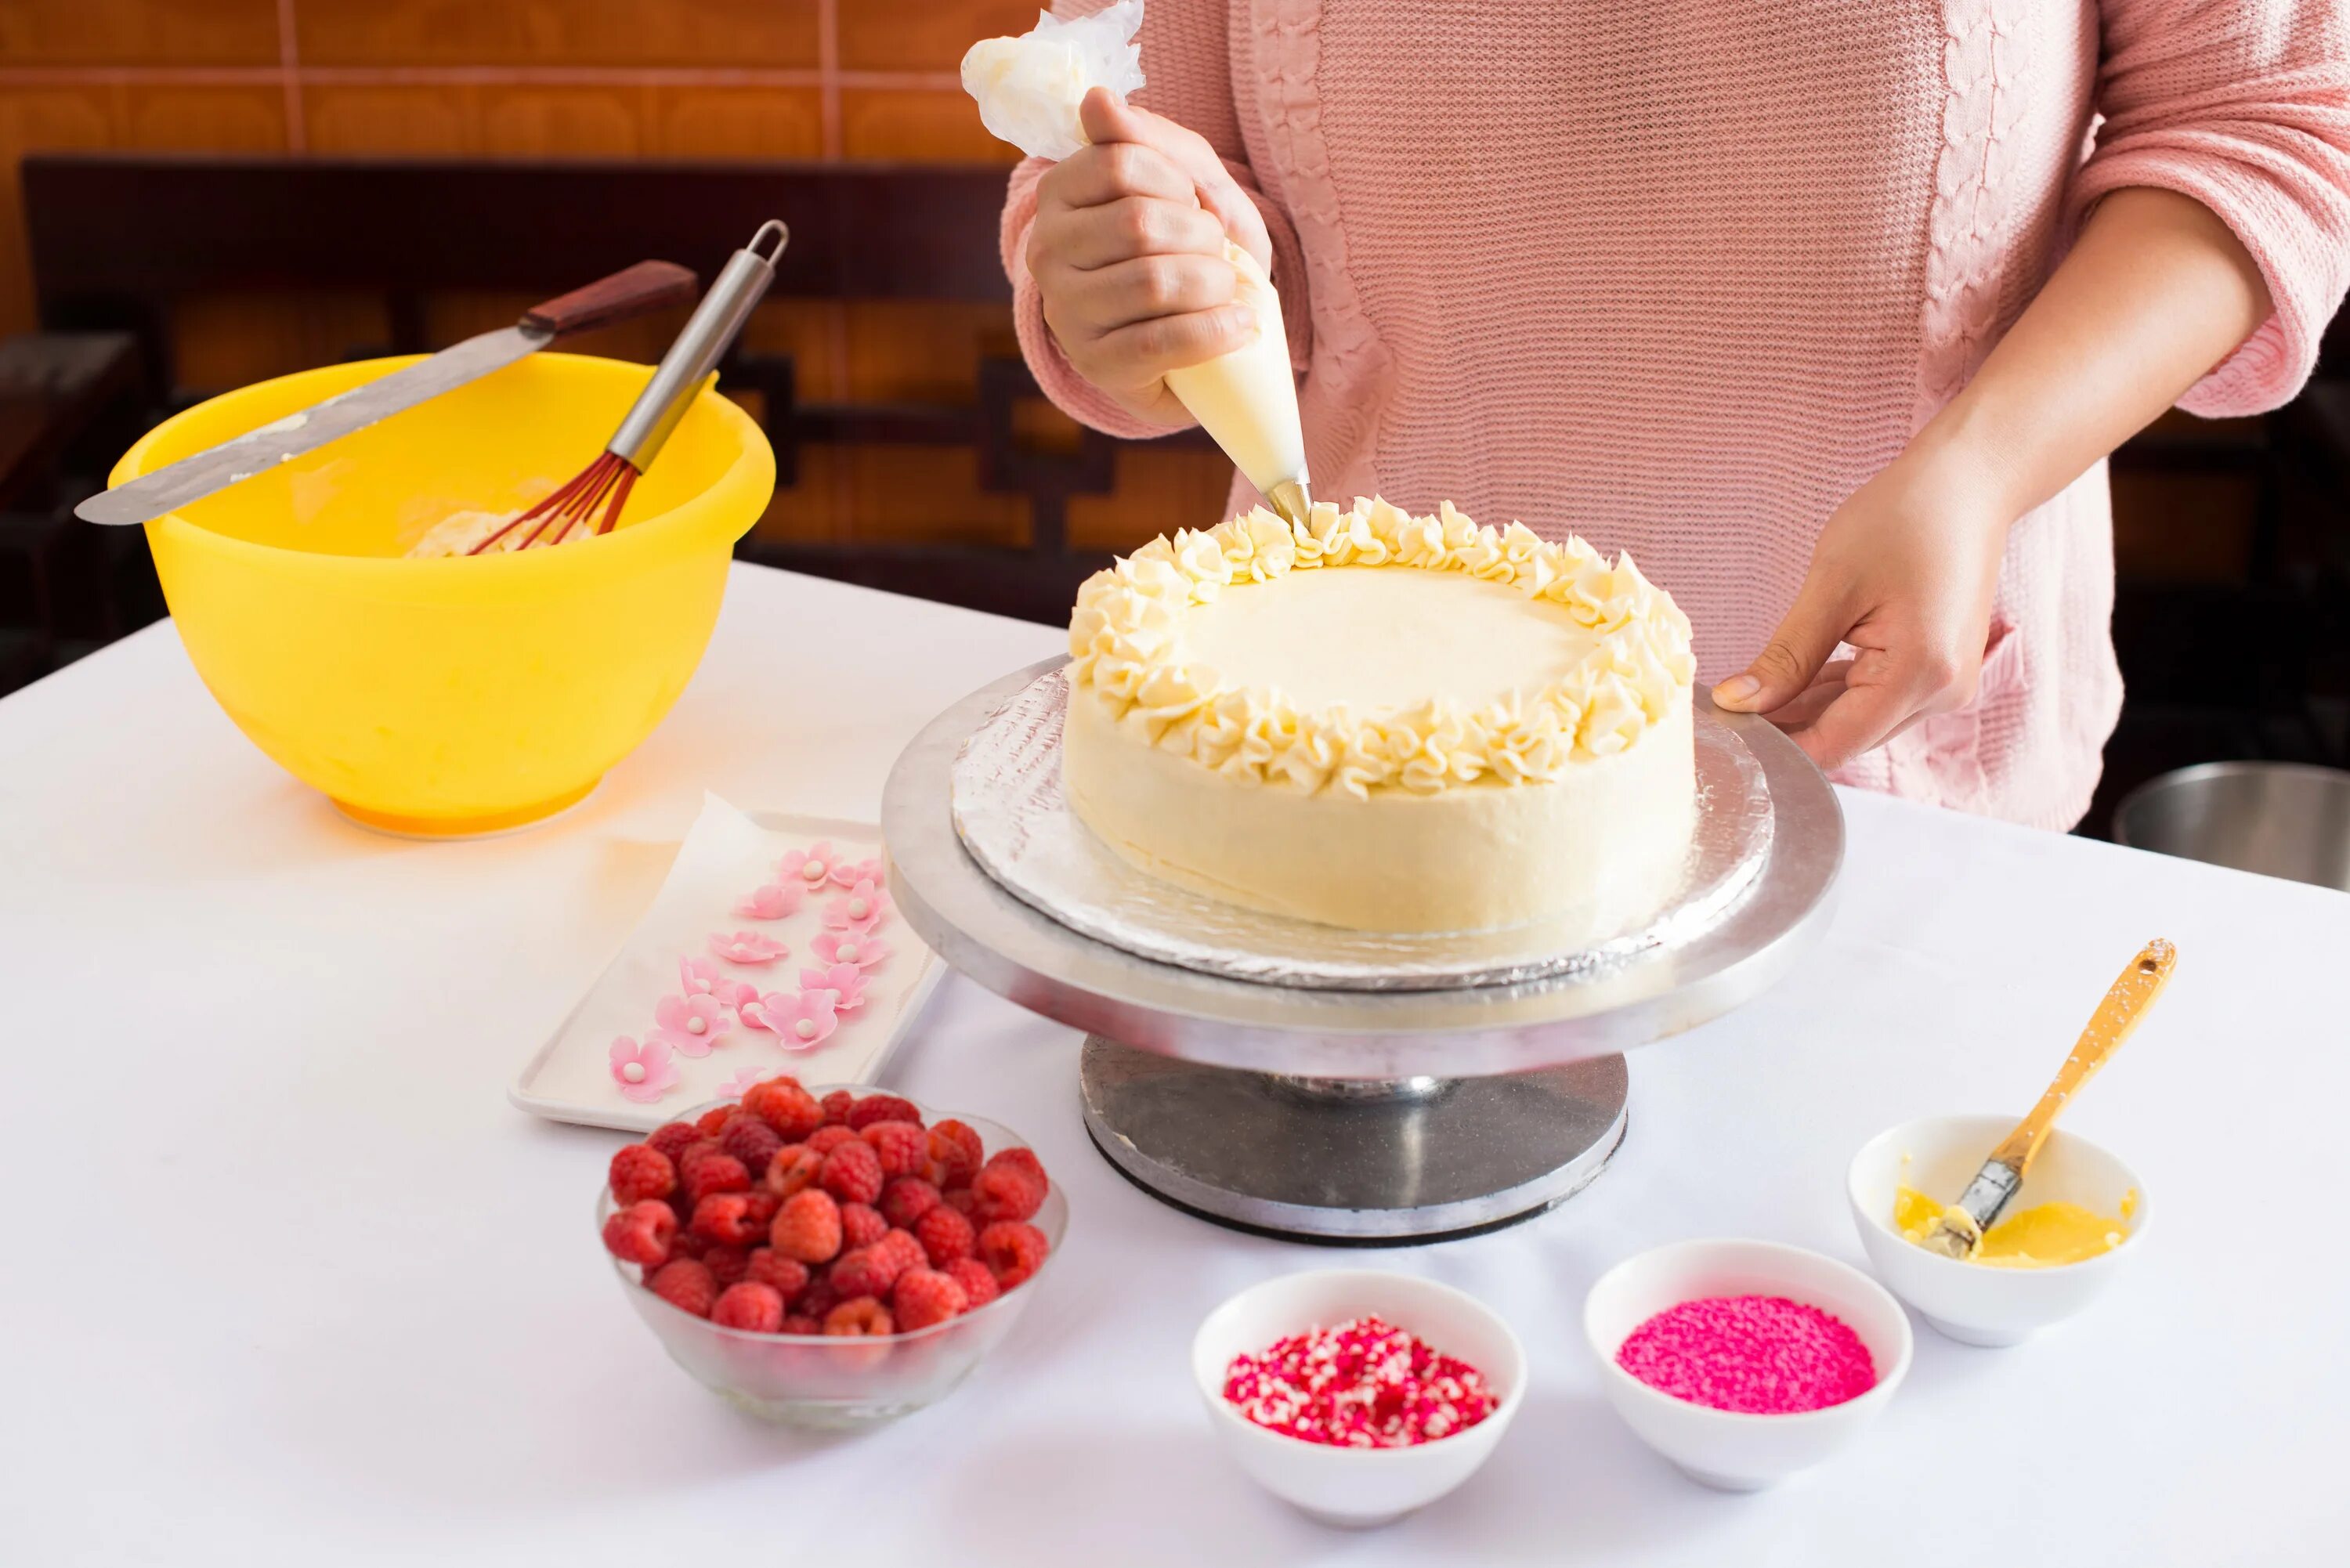 Готовка торта. Кулинарные украшения для тортов. Выпекание торта. Фотосессия приготовления торта. Preparing на русском